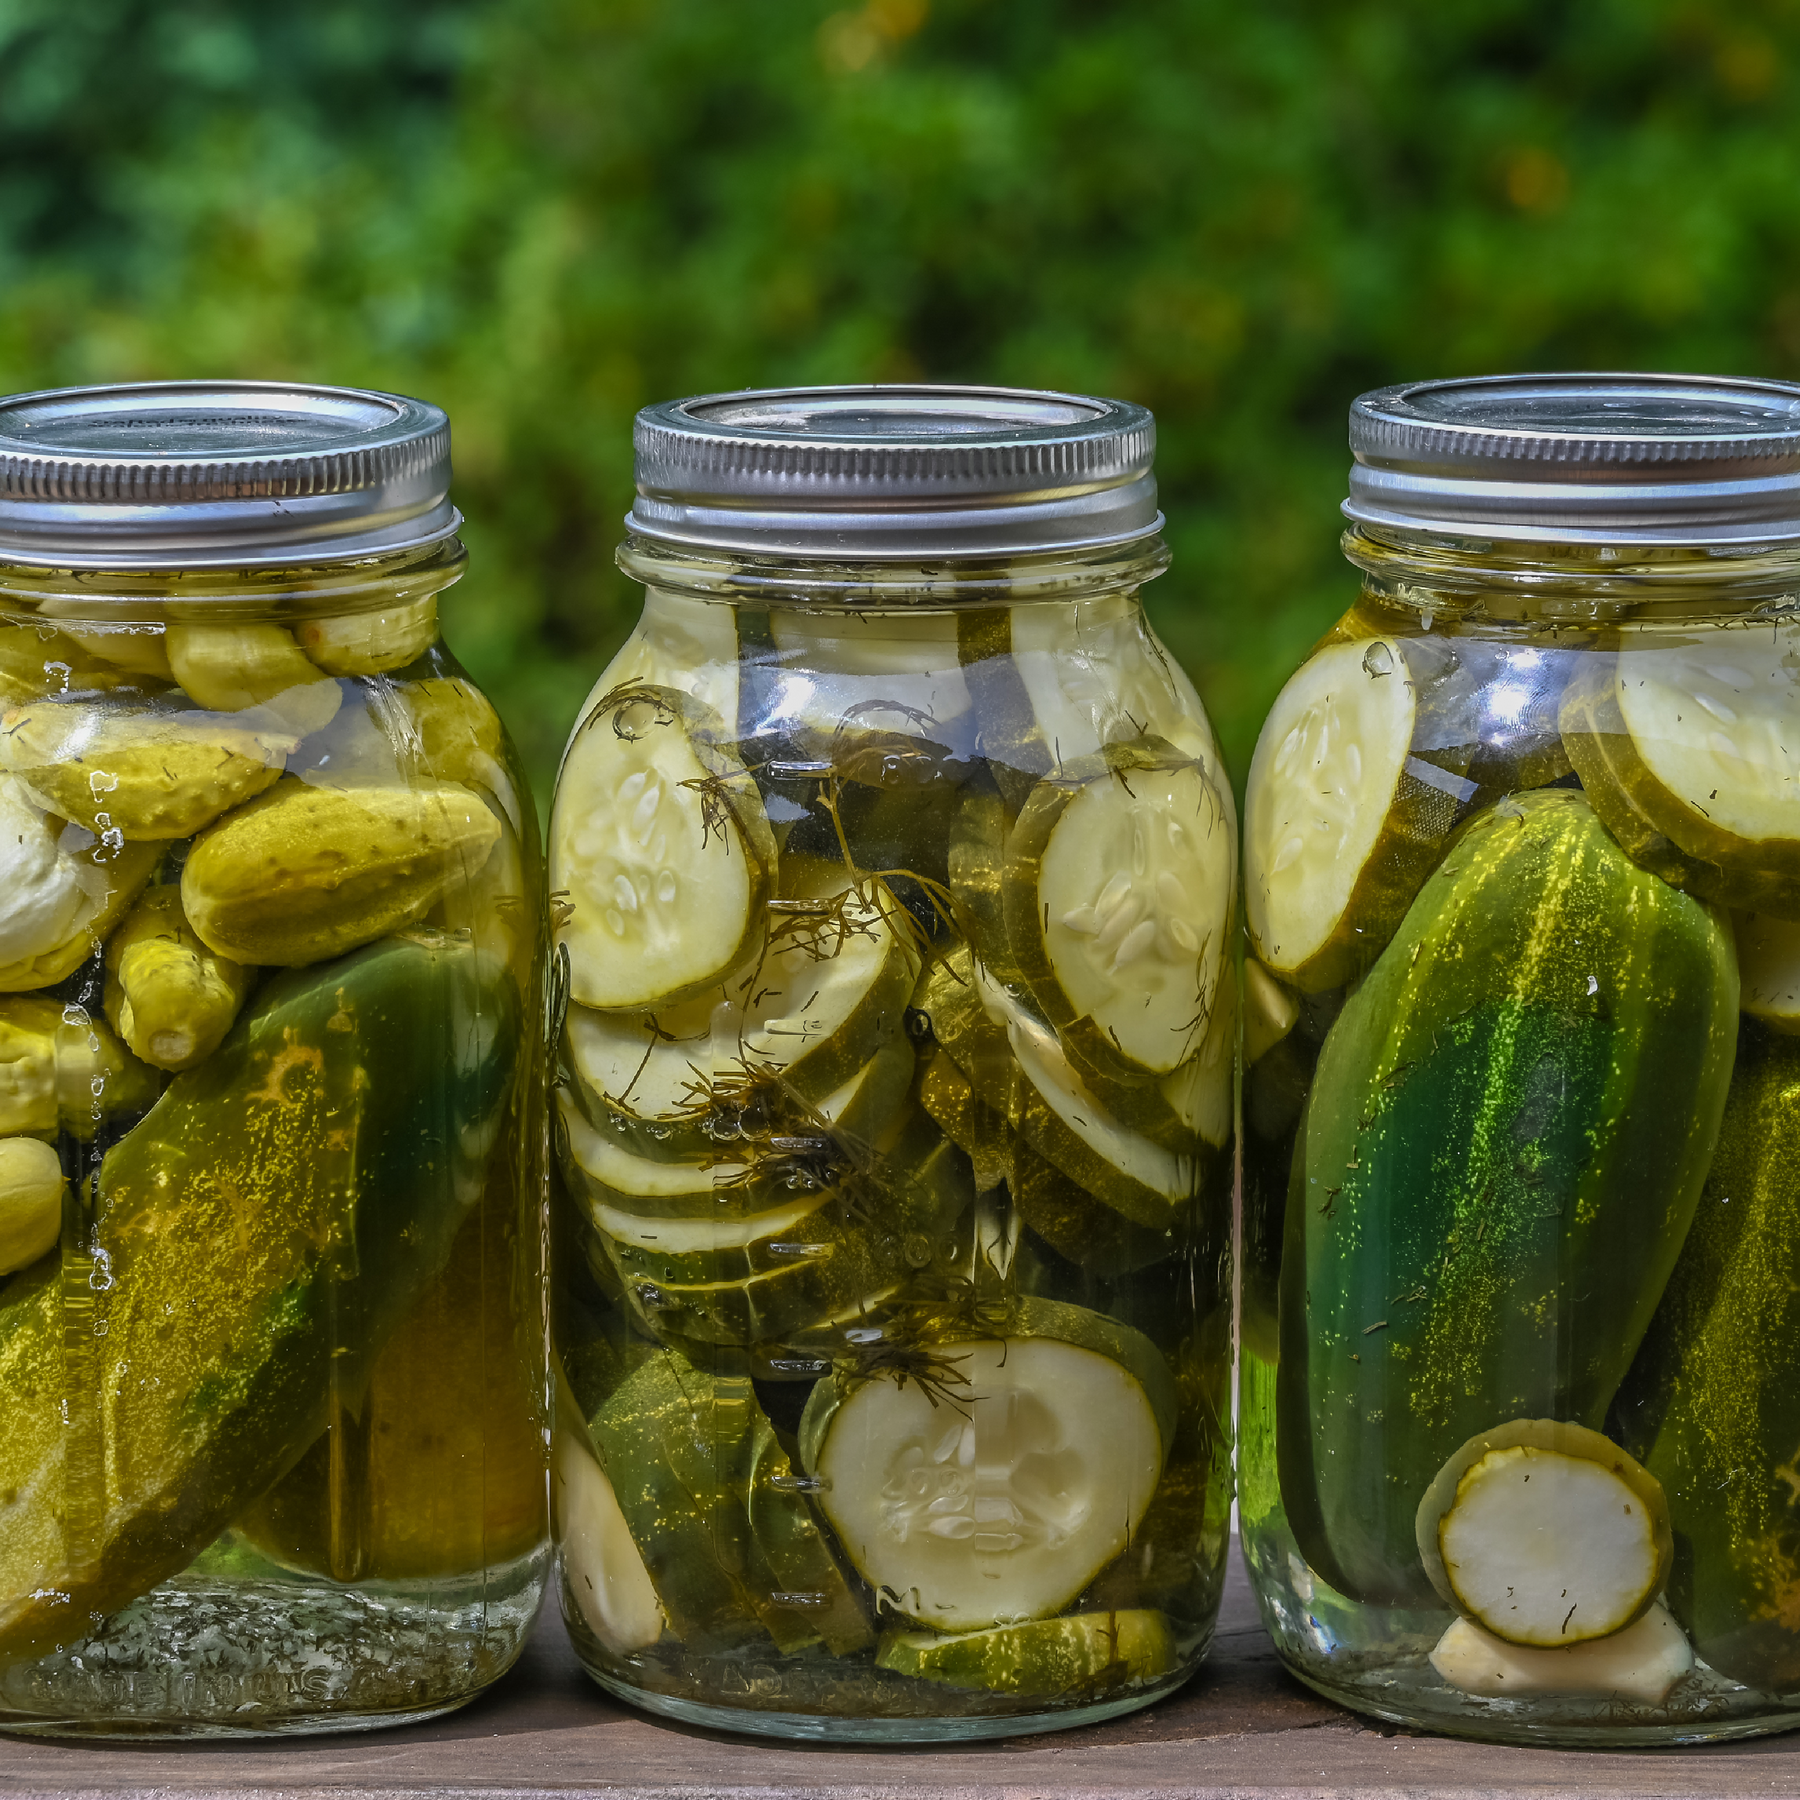 Pickled cucumbers in a mason jar